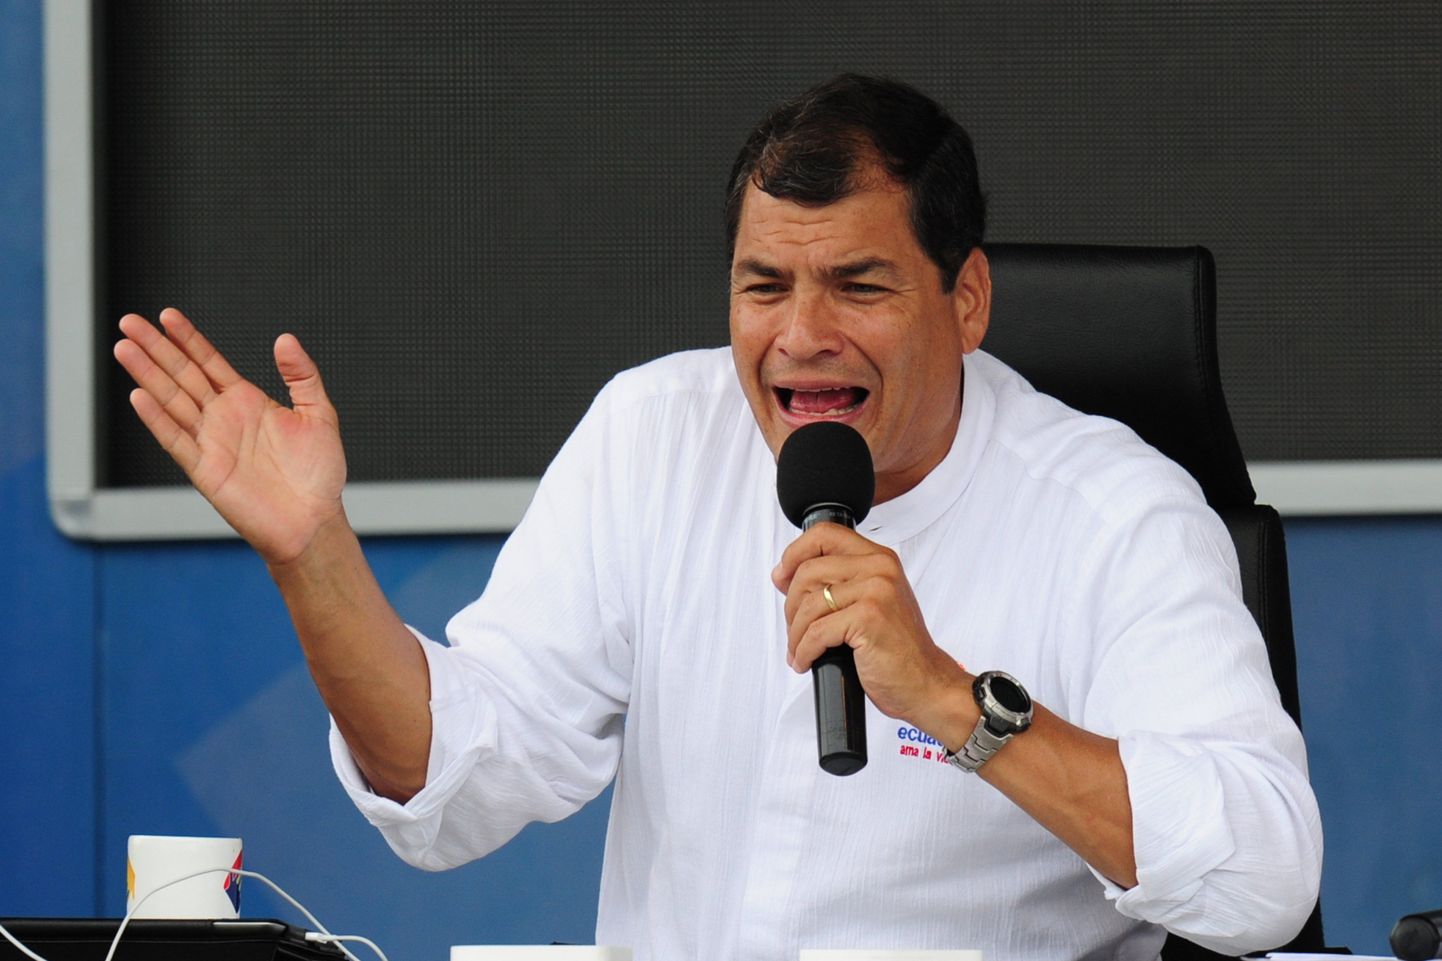 Ecuadori president Rafael Correa